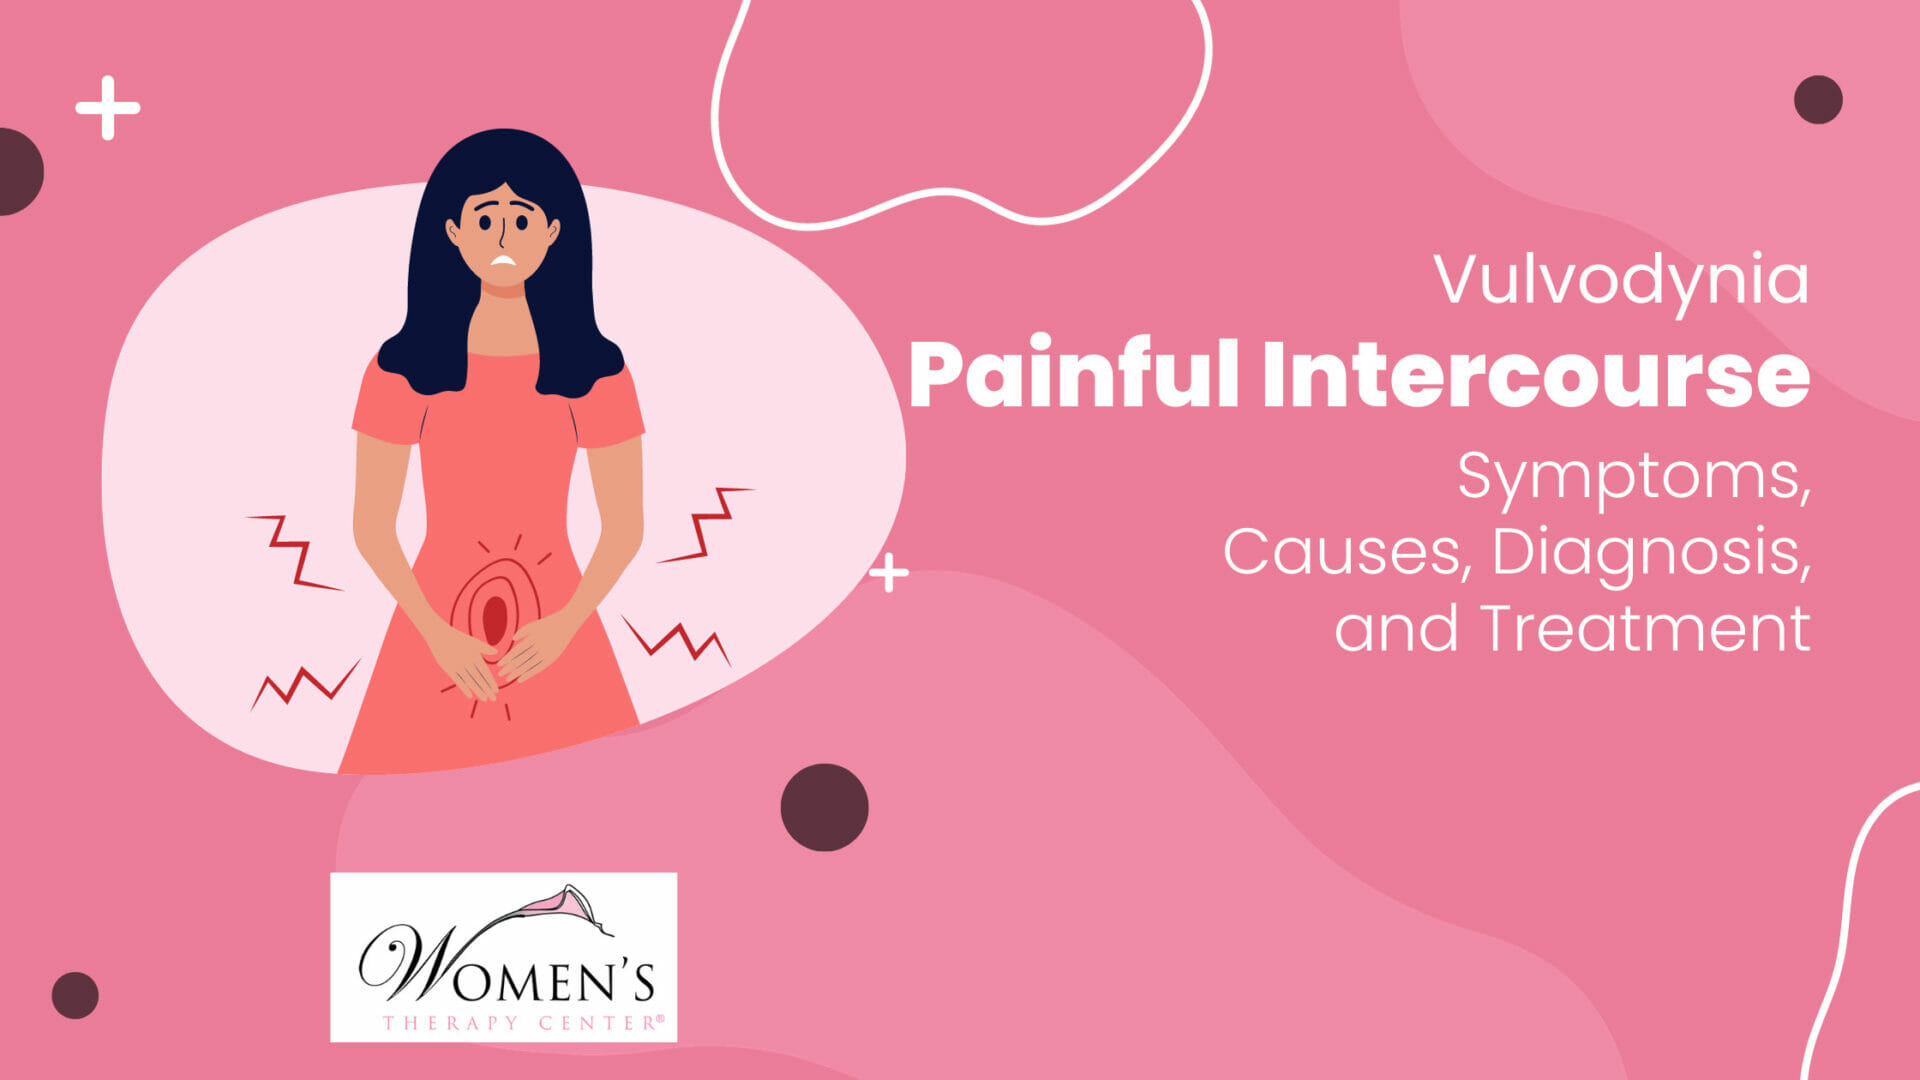 אישה עם כאב חושב על התייעצות עם ספק מרכז בריאות נשים לגבי תסמיני וולוודיניה ואפשרויות טיפול.